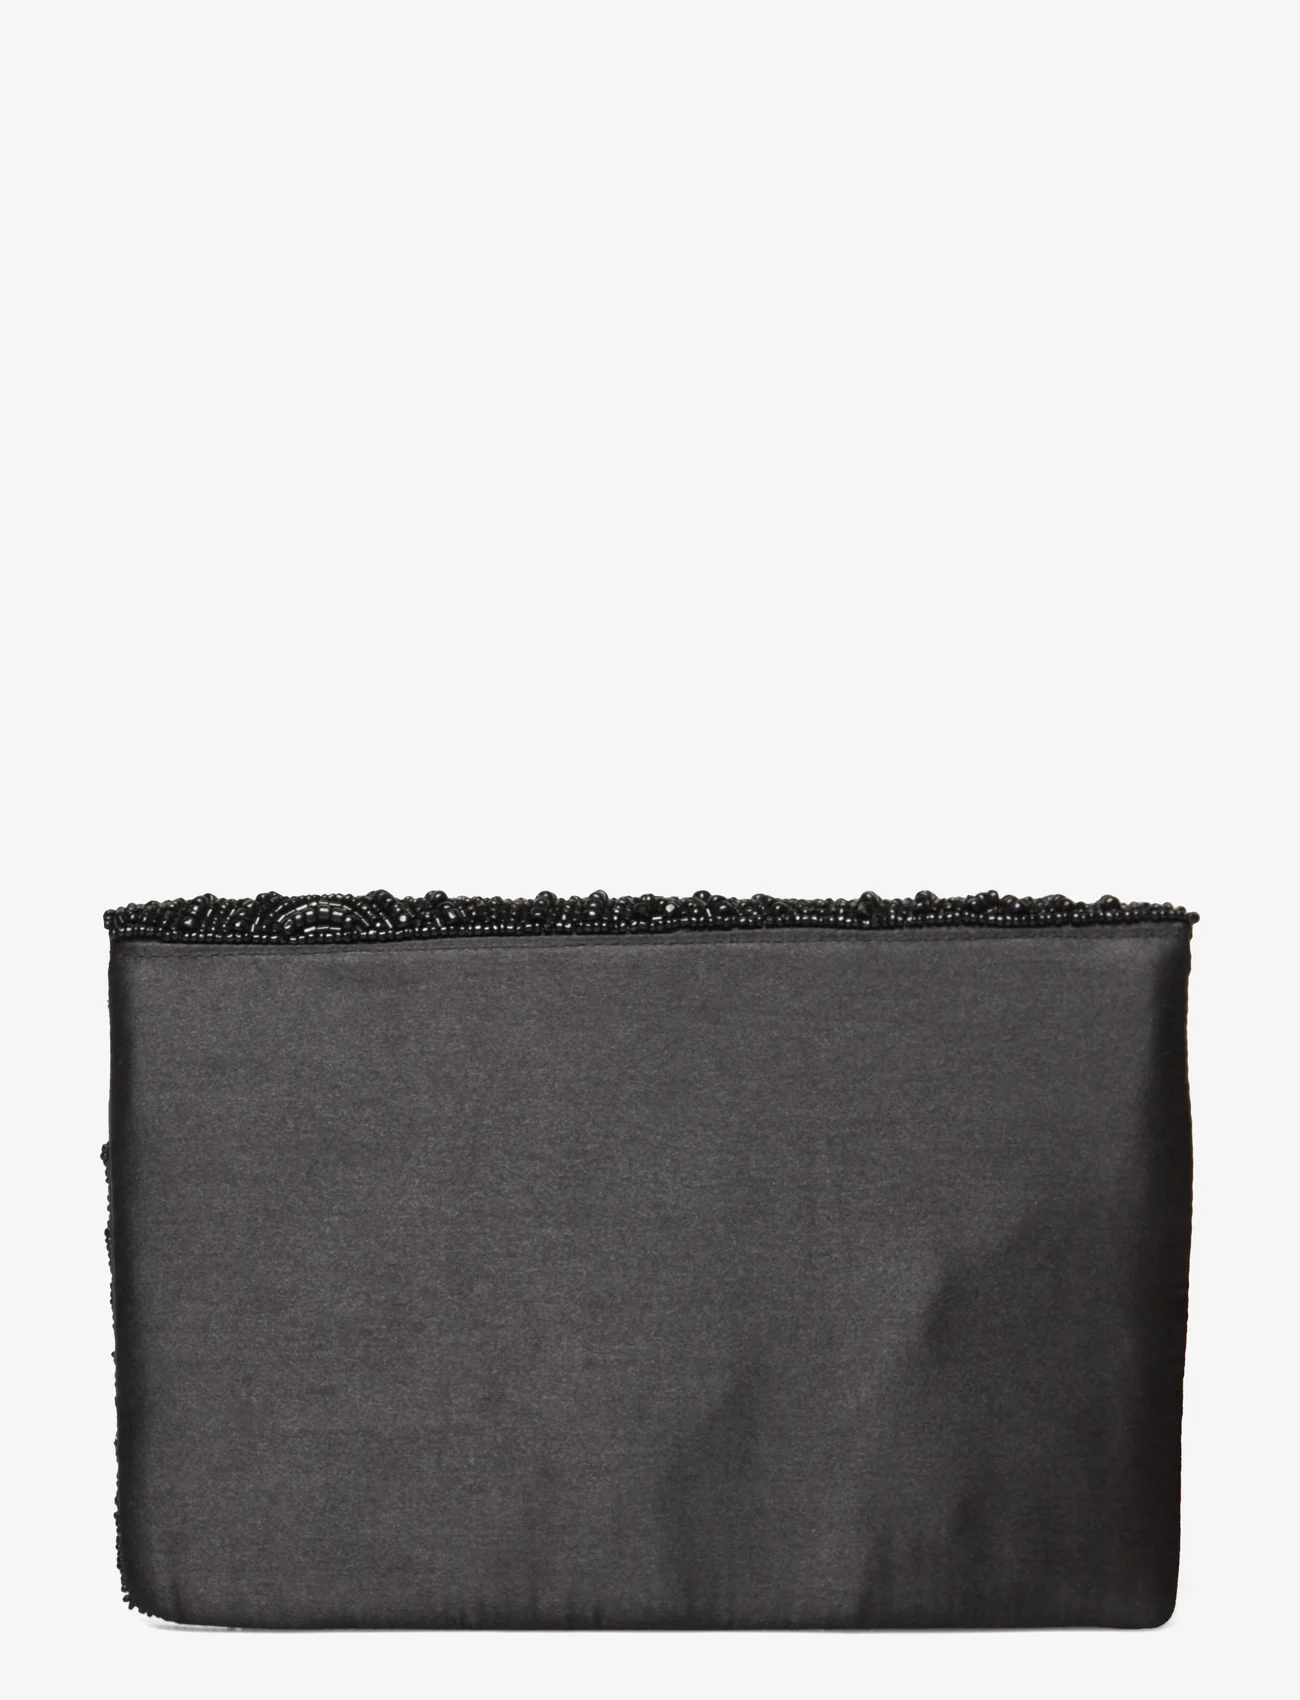 Pipol's Bazaar - Casablanca Black Clutch Bag - feestelijke kleding voor outlet-prijzen - multi - 1